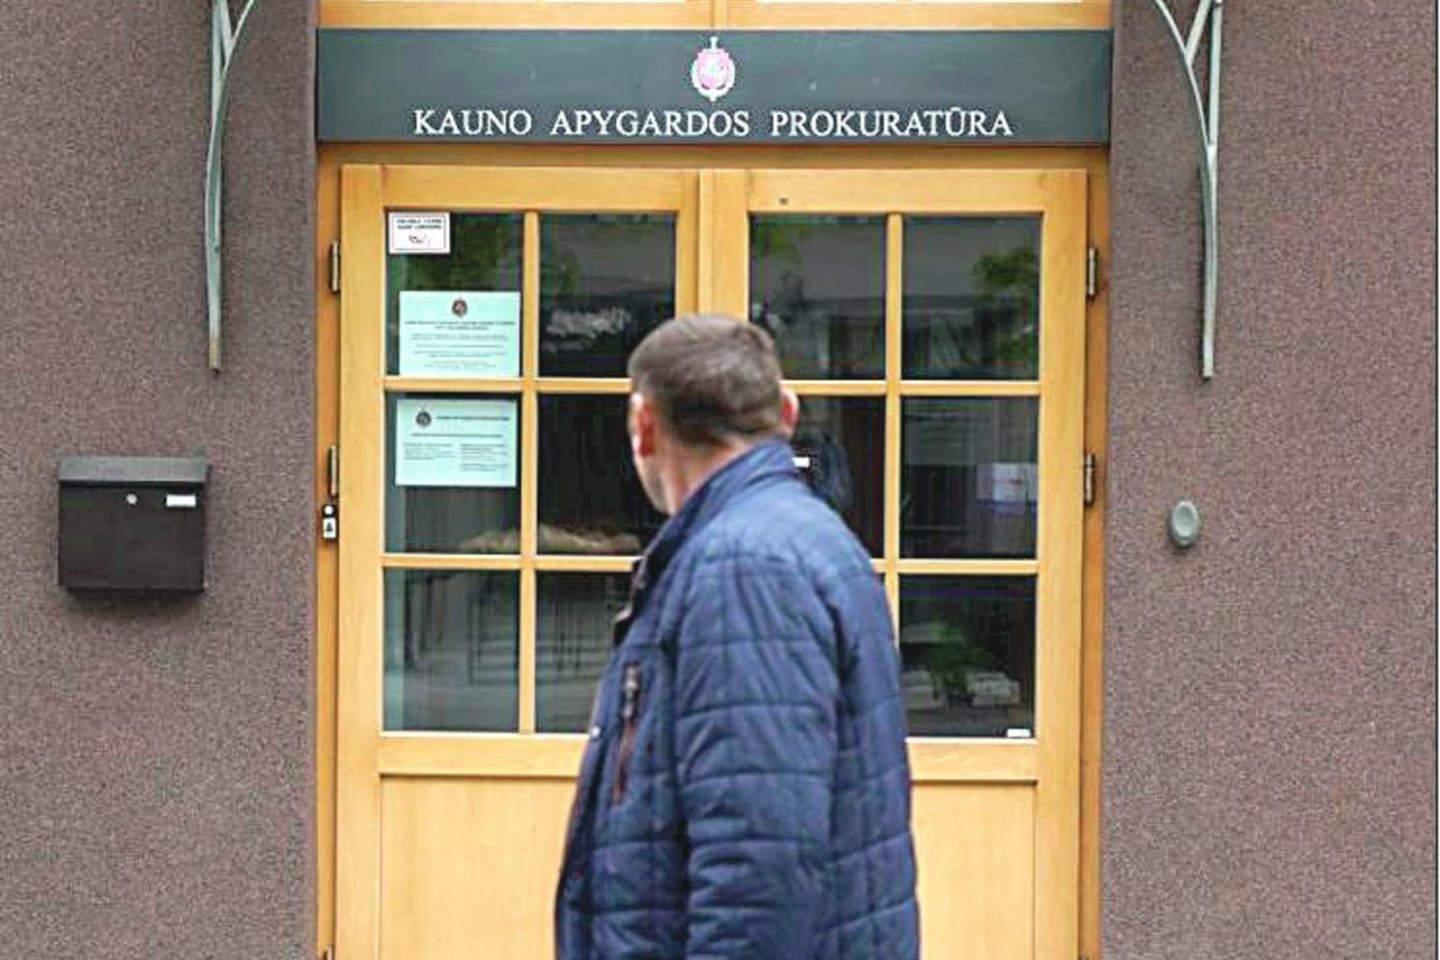 Kauno apygardos prokuratūra į teismą yra perdavusi baudžiamąją bylą, kurioje teisiamasis kaltinamas vaikų prievartavimu, tvirkinimu, įtraukimu girtauti.